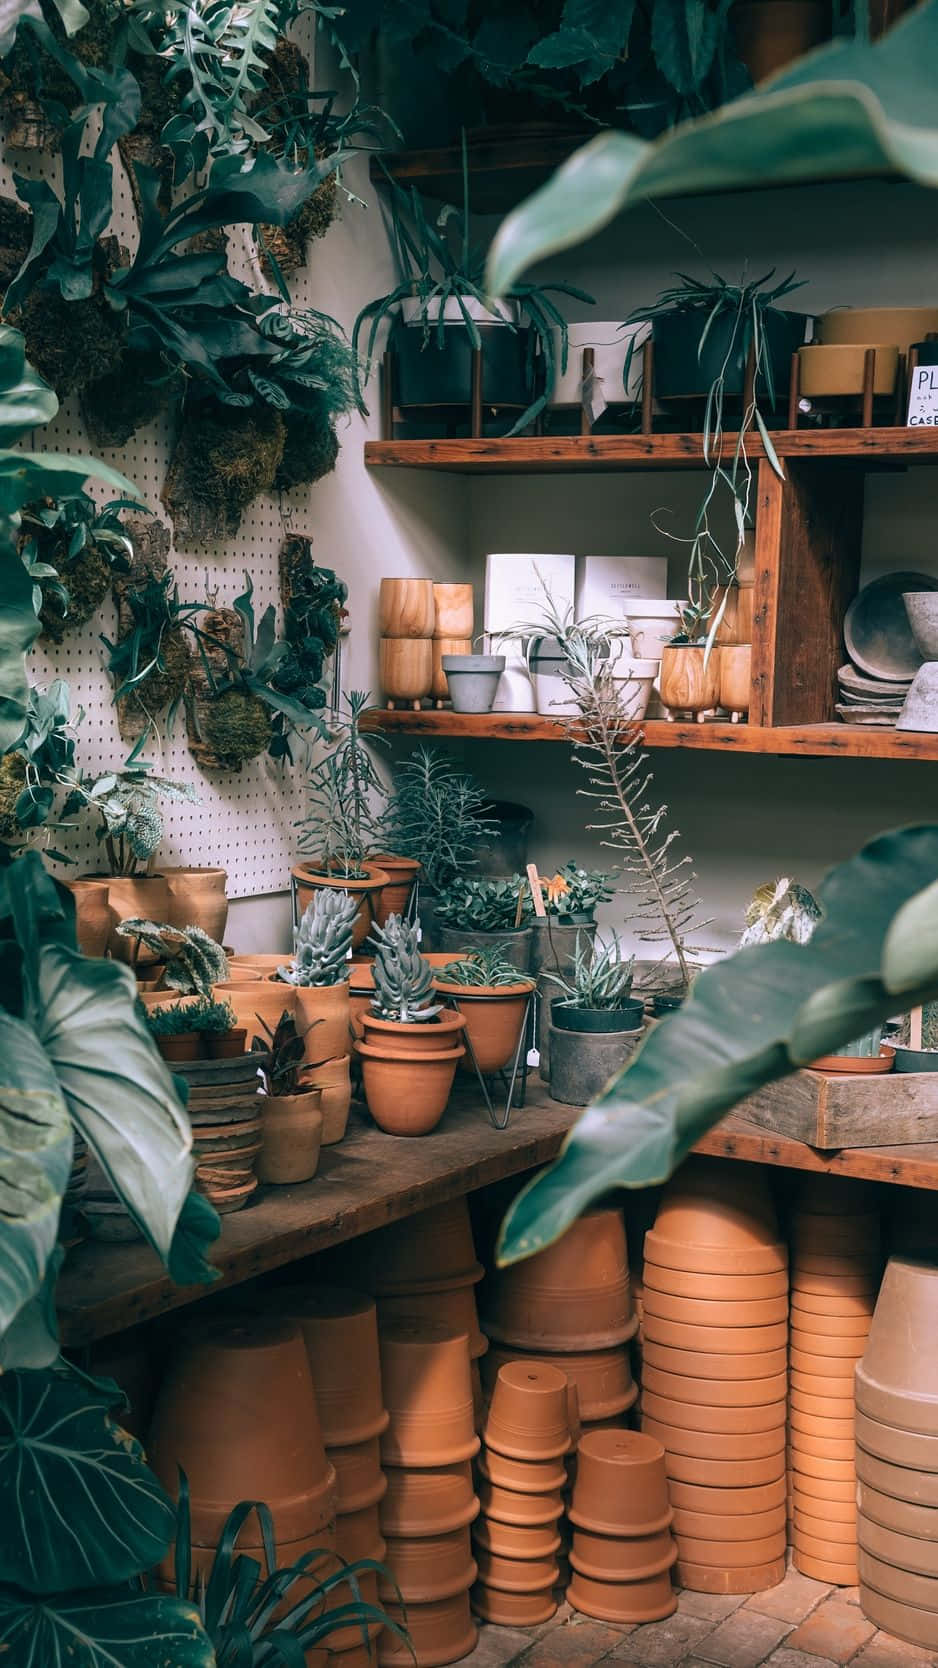 En butik med mange potter og planter. Wallpaper